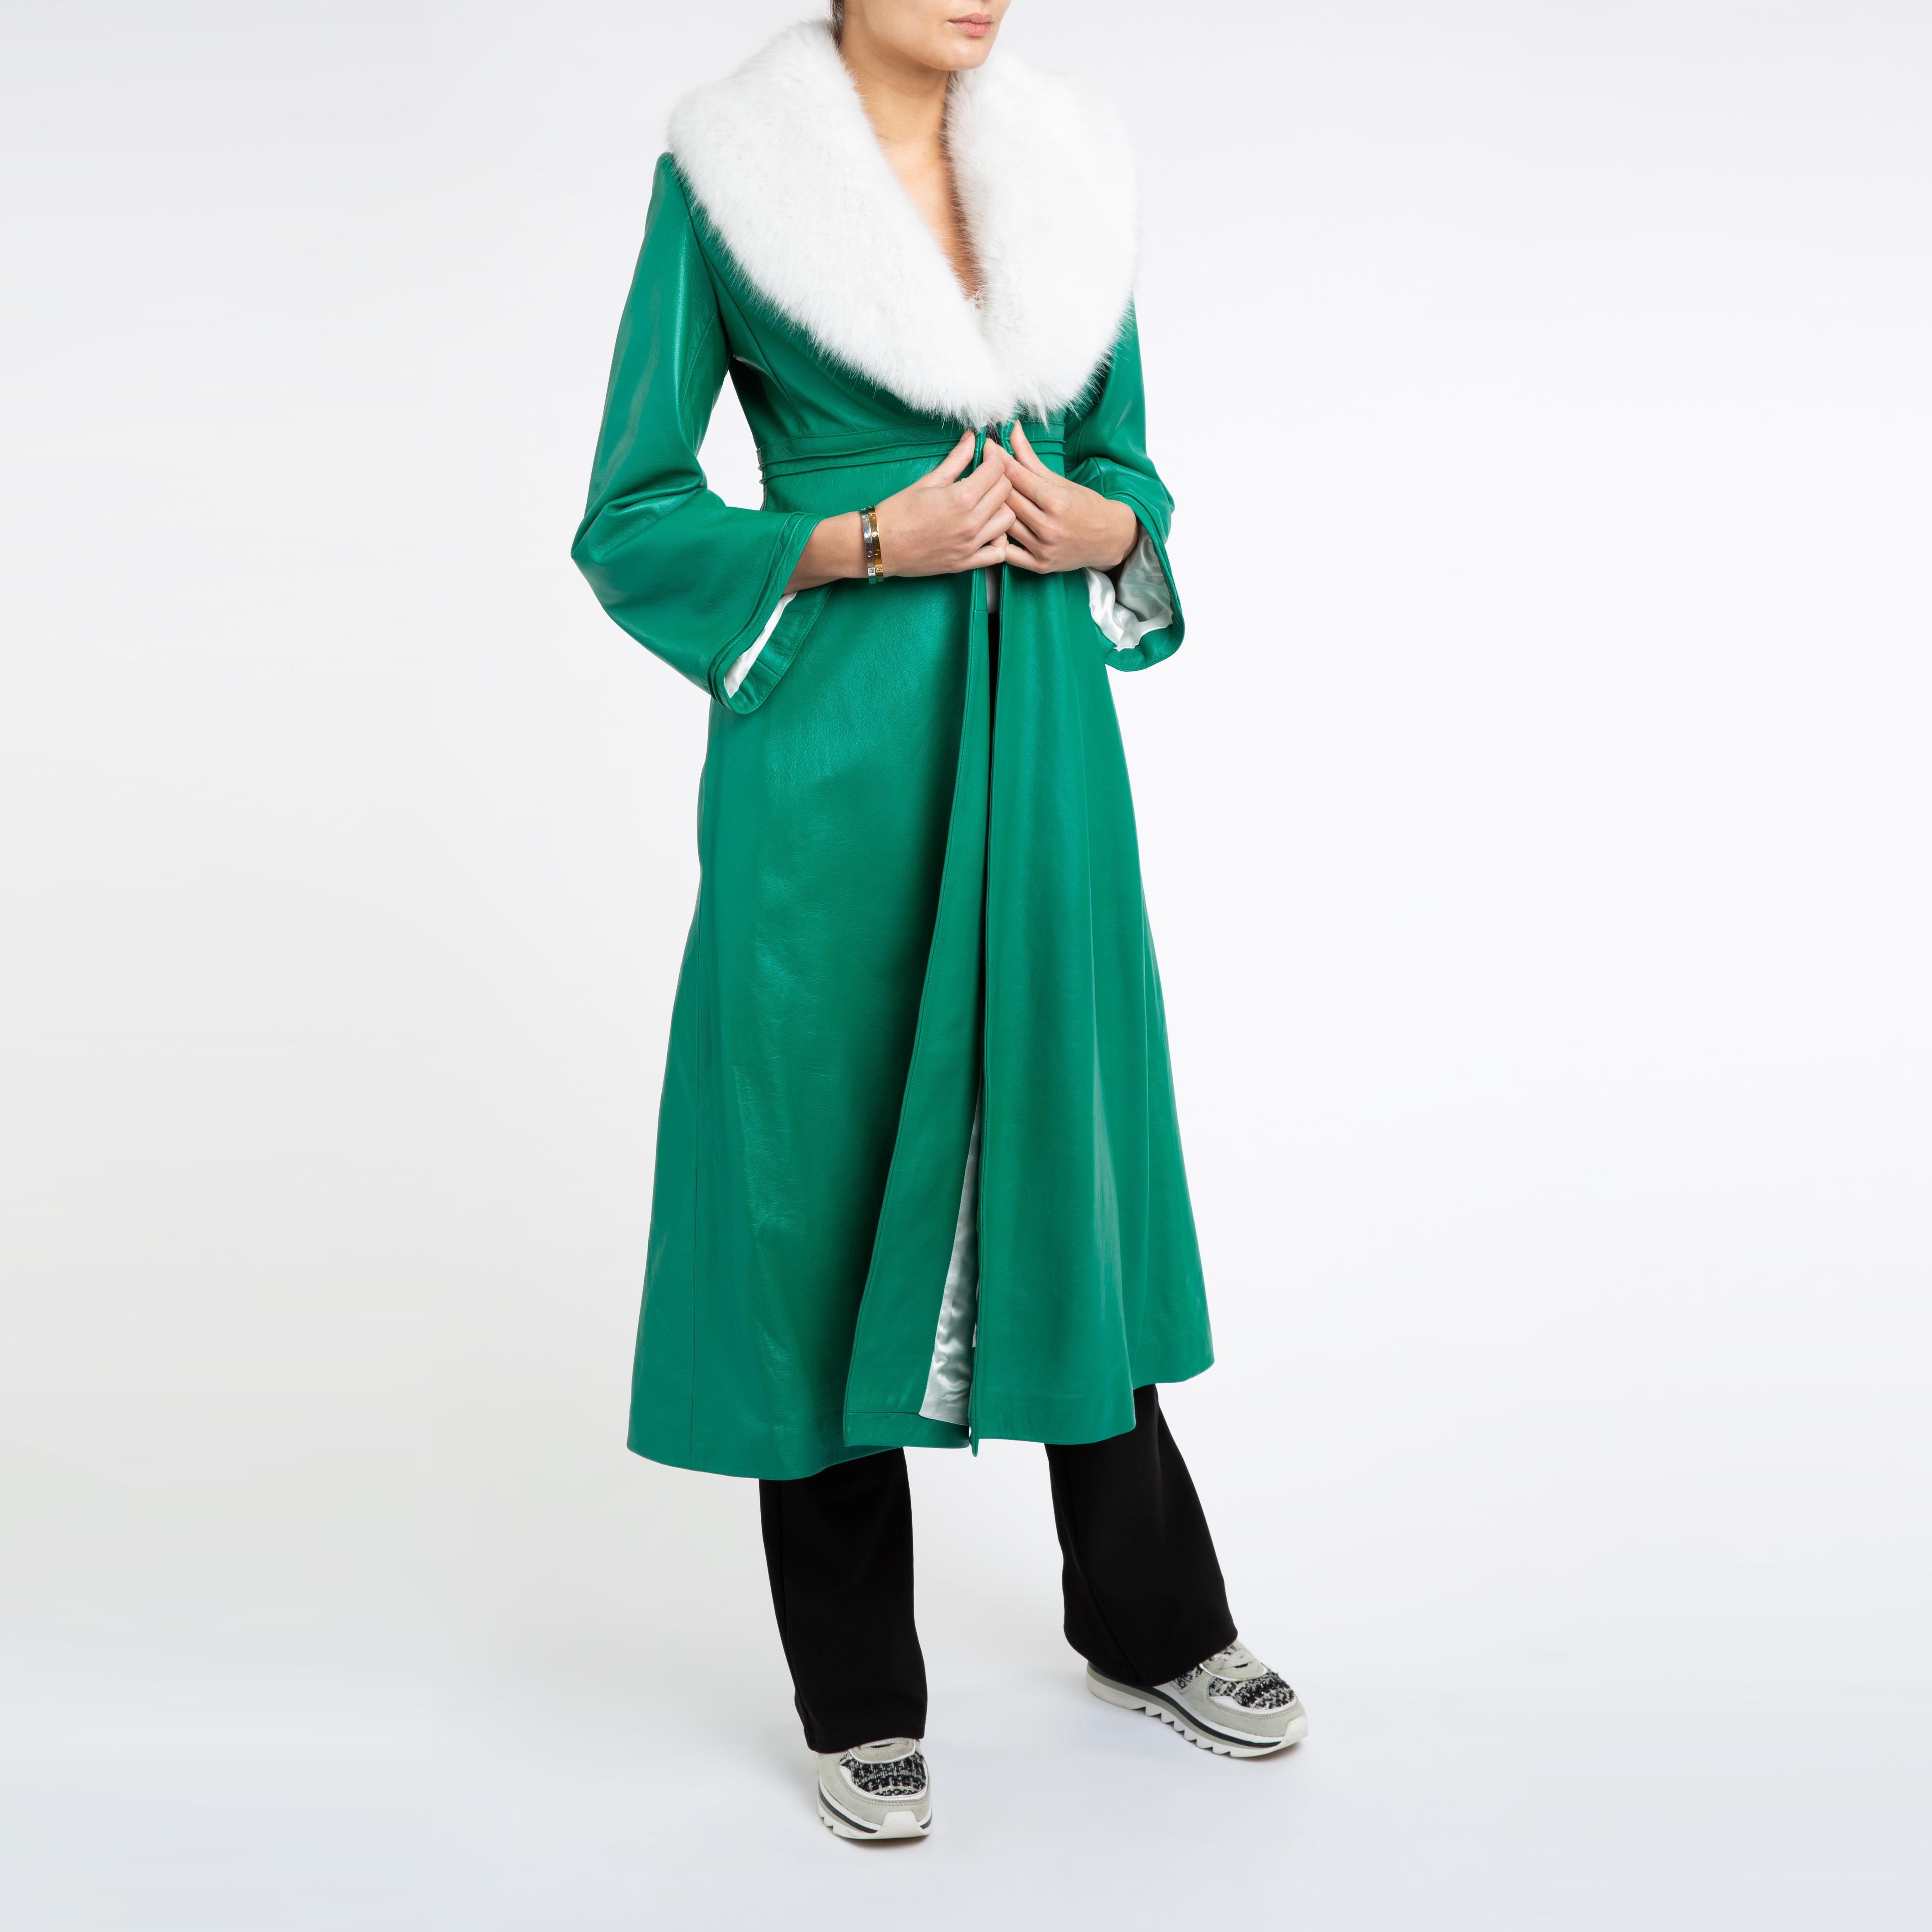 Women's Verheyen London Edward Leather Coat in Green & White Faux Fur - Size 8 UK  For Sale